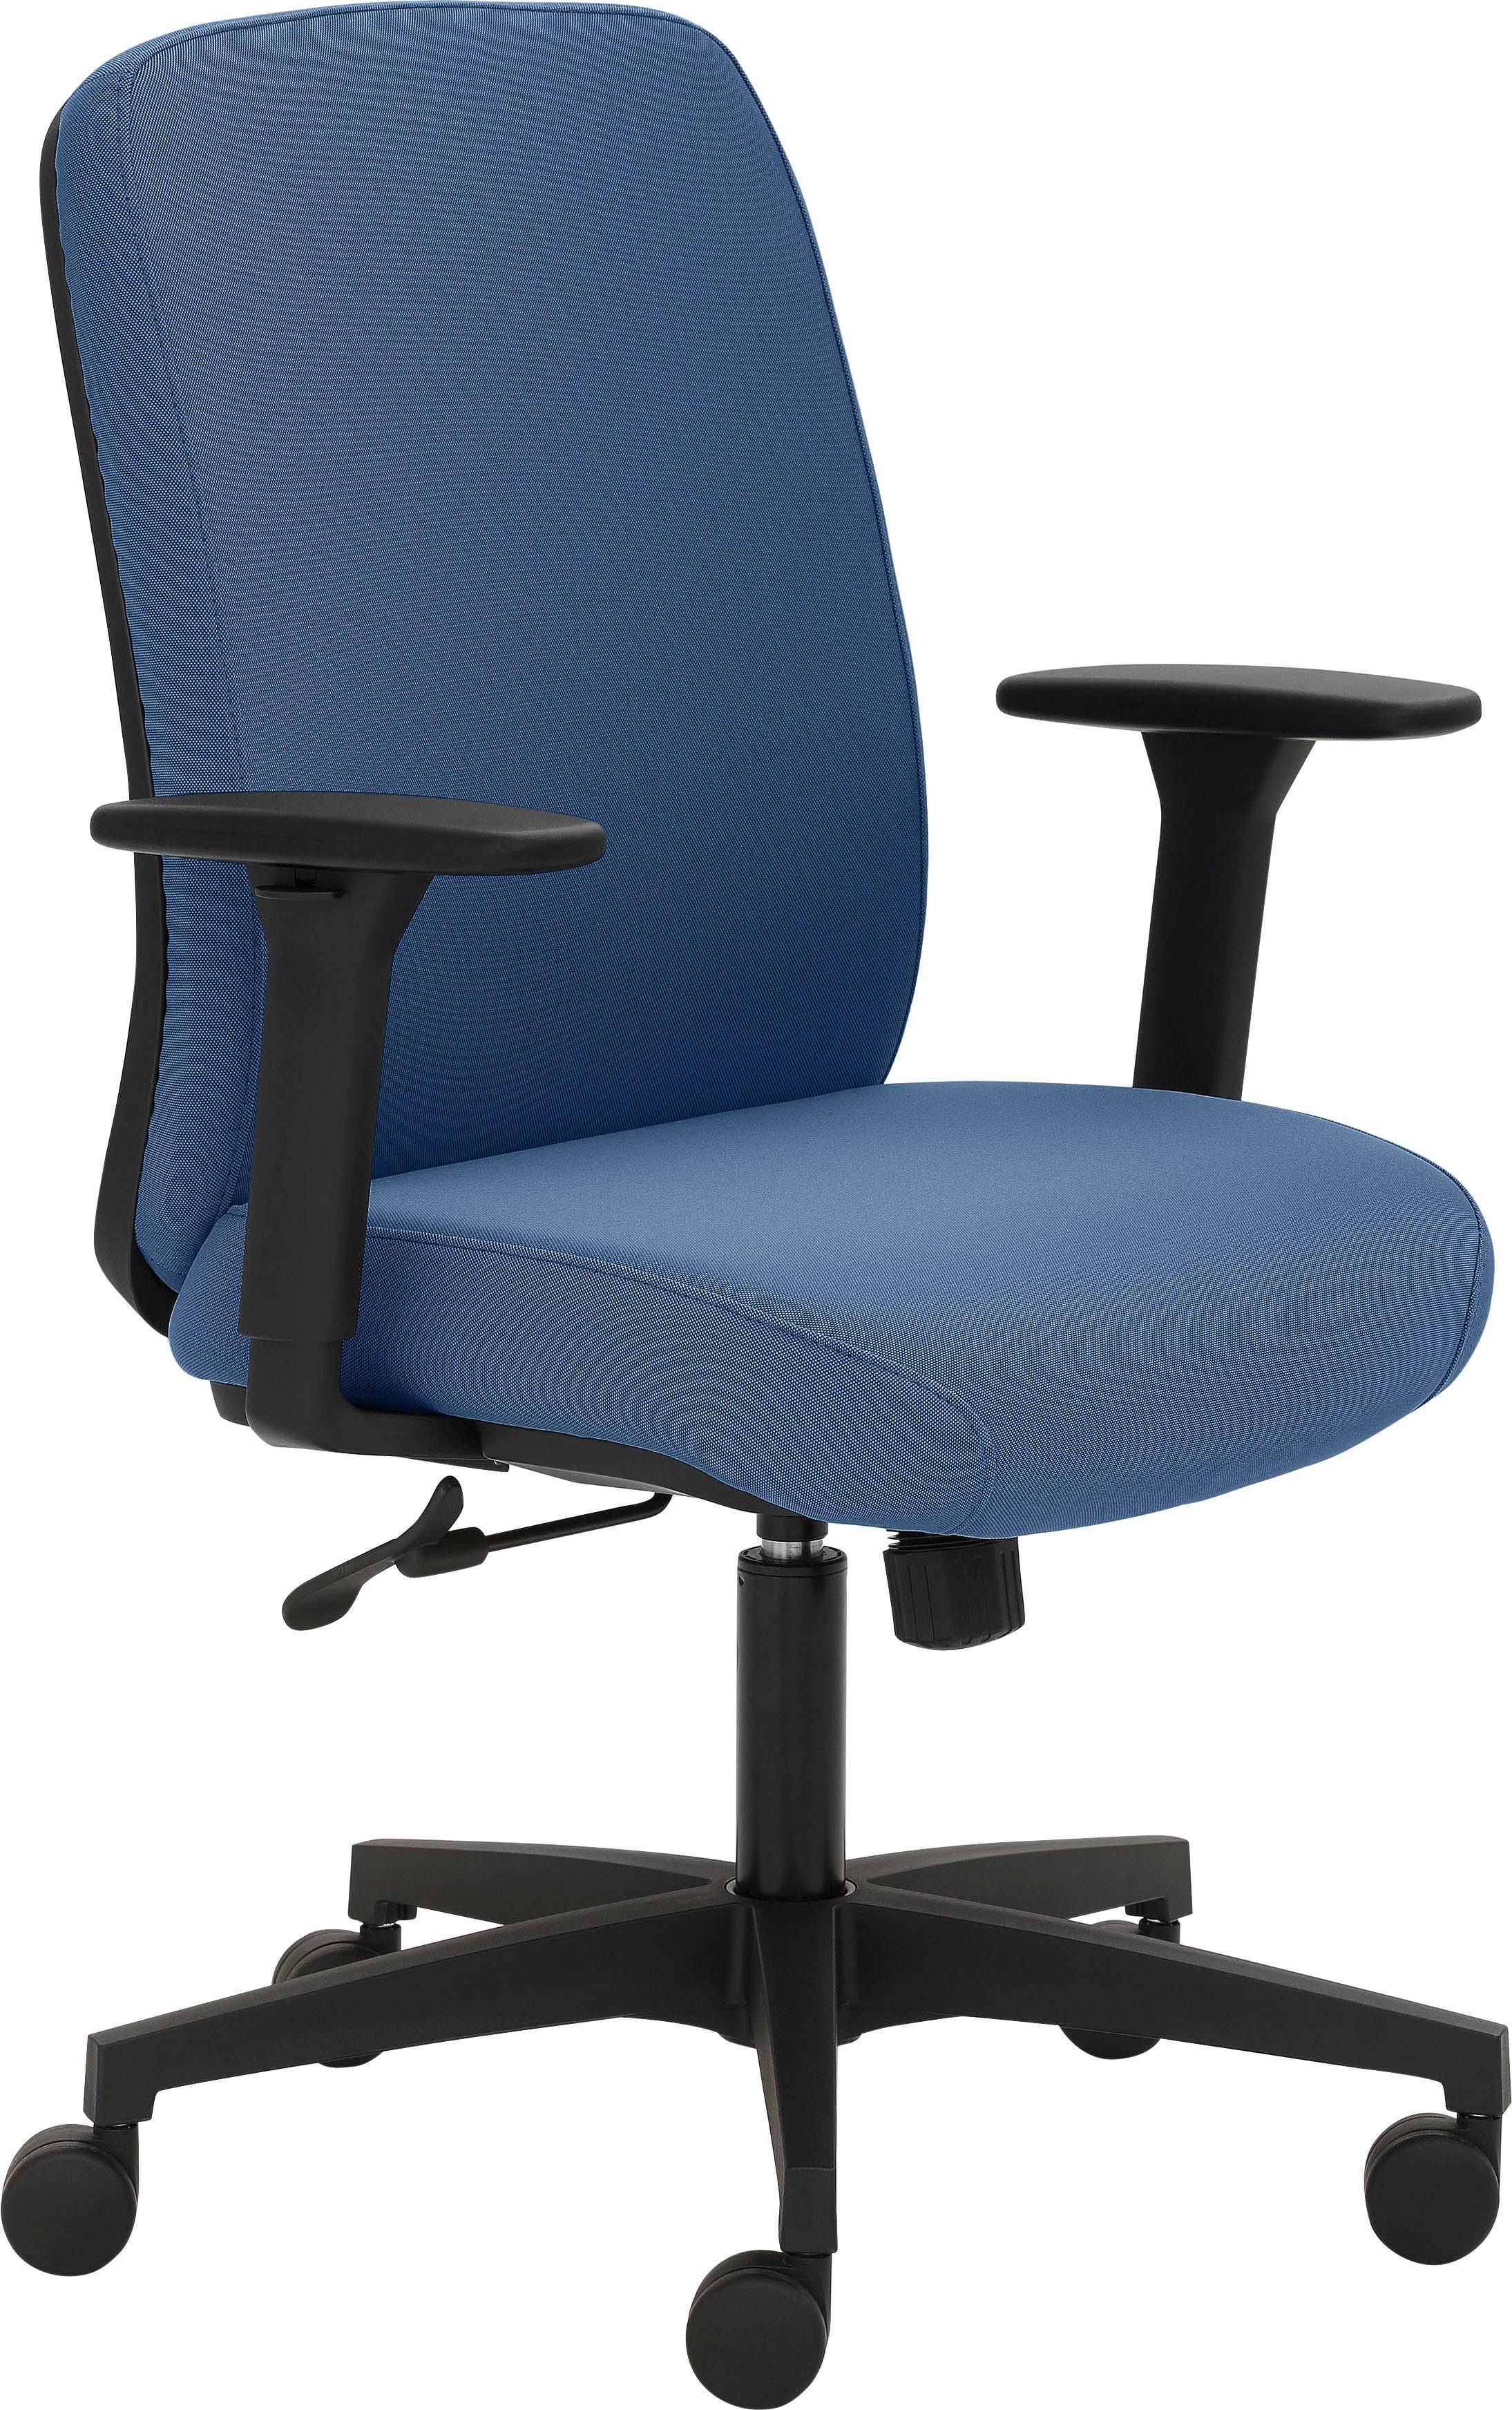 Mayer Sitzmöbel Drehstuhl 2219, GS-zertifiziert, extra starke Polsterung für maximalen Sitzkomfort Blau | Blau